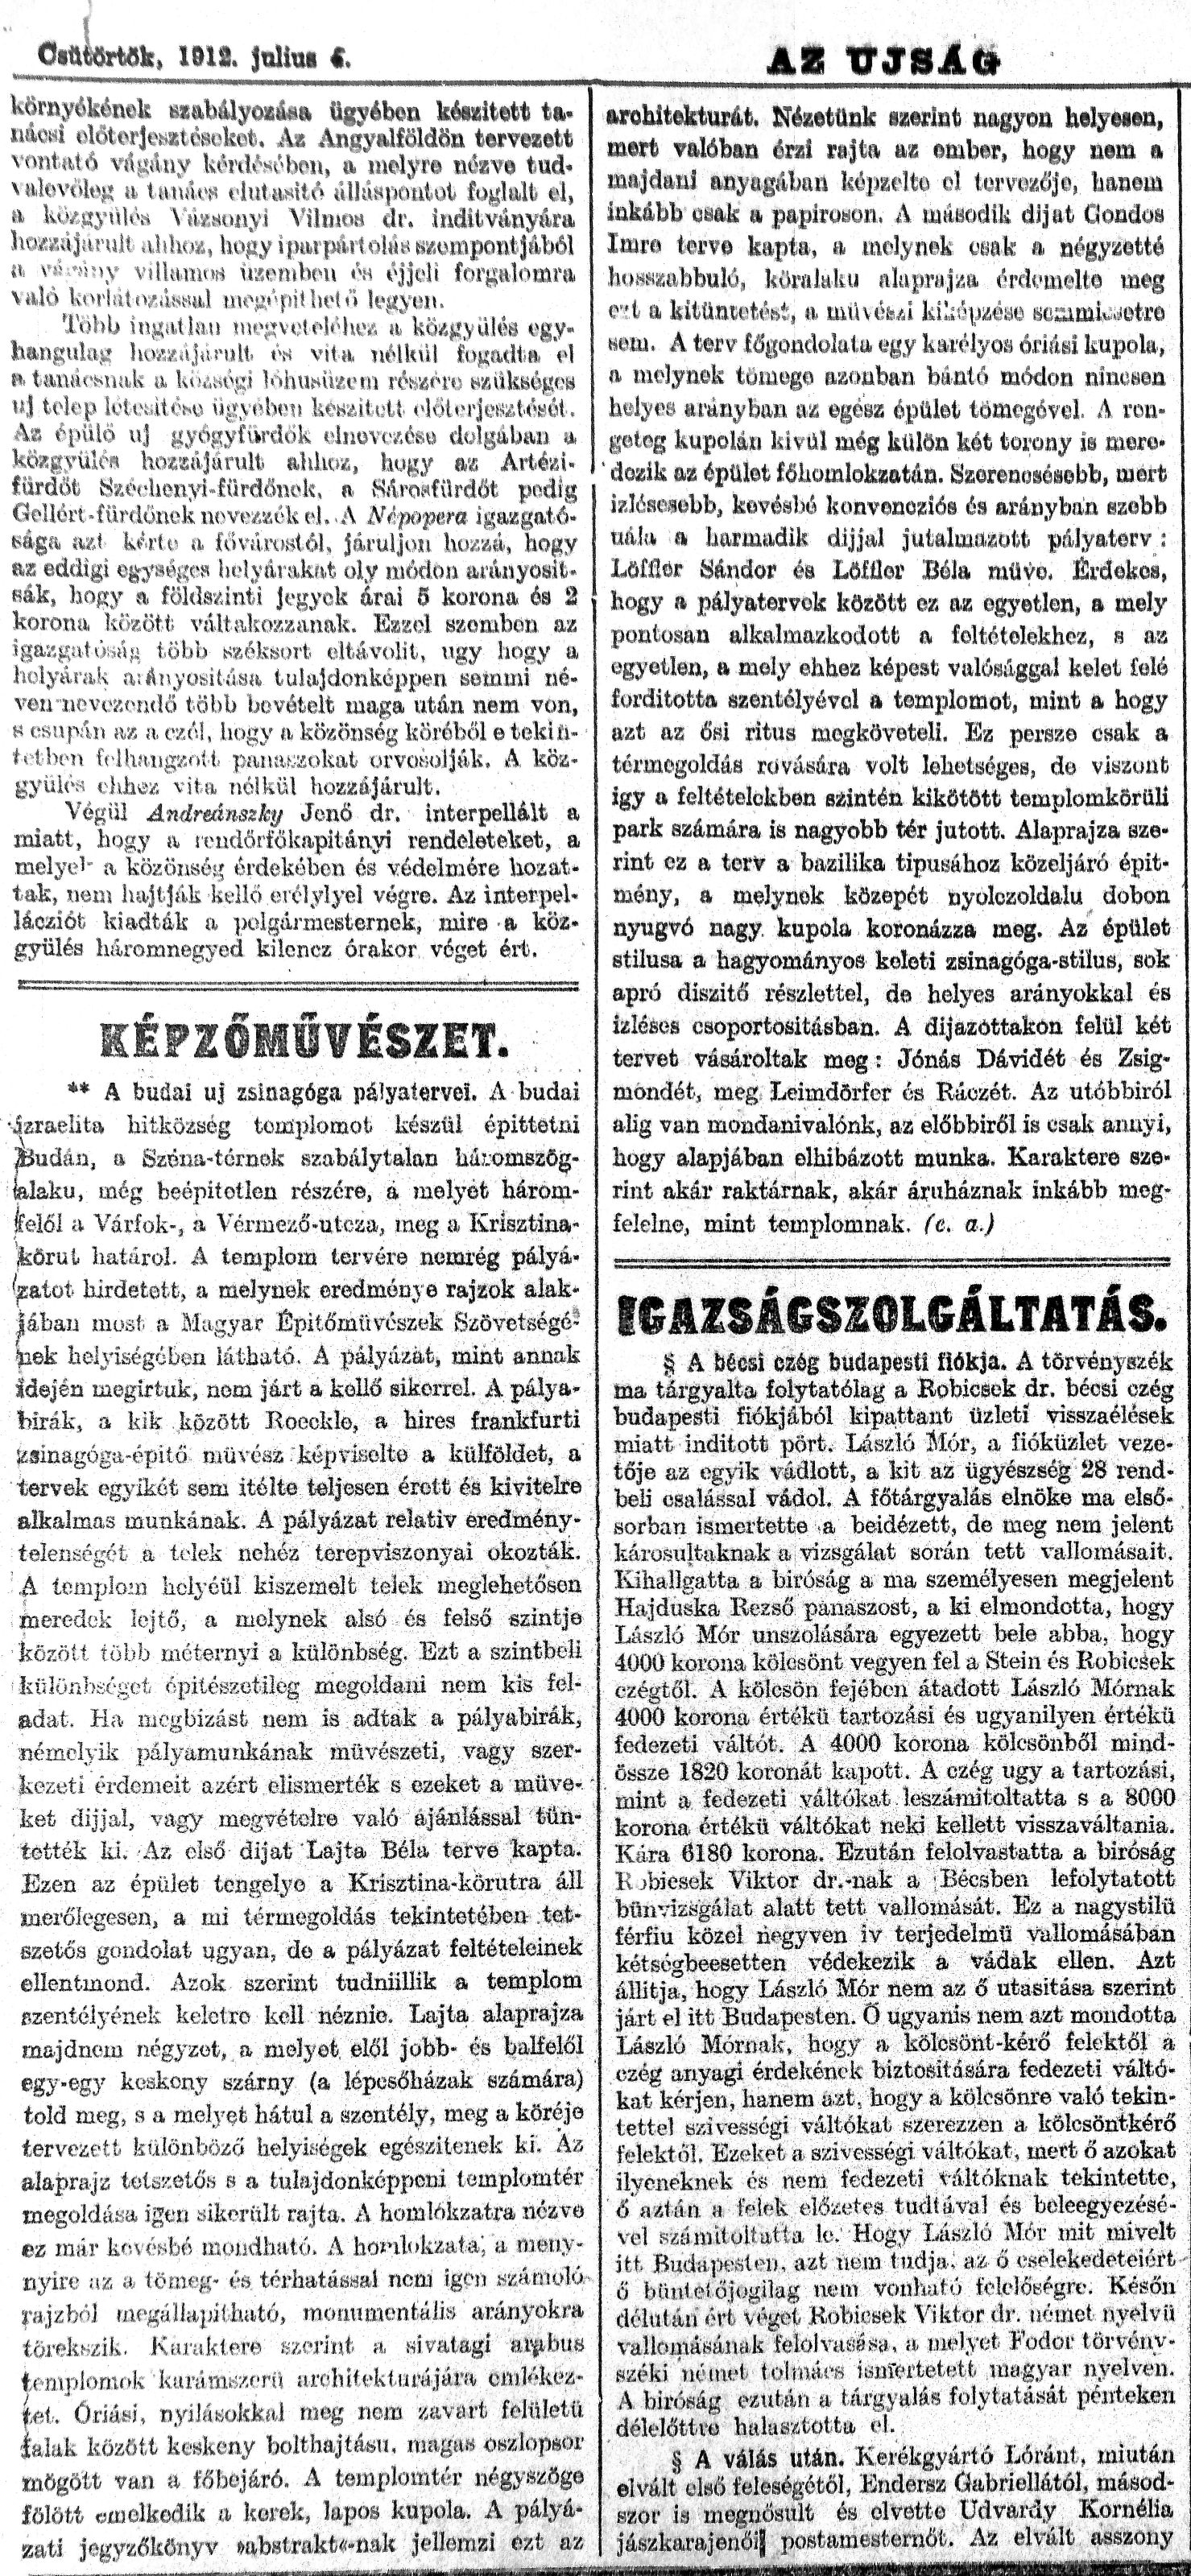 04_Az Újság, 1912. VII. 6. 